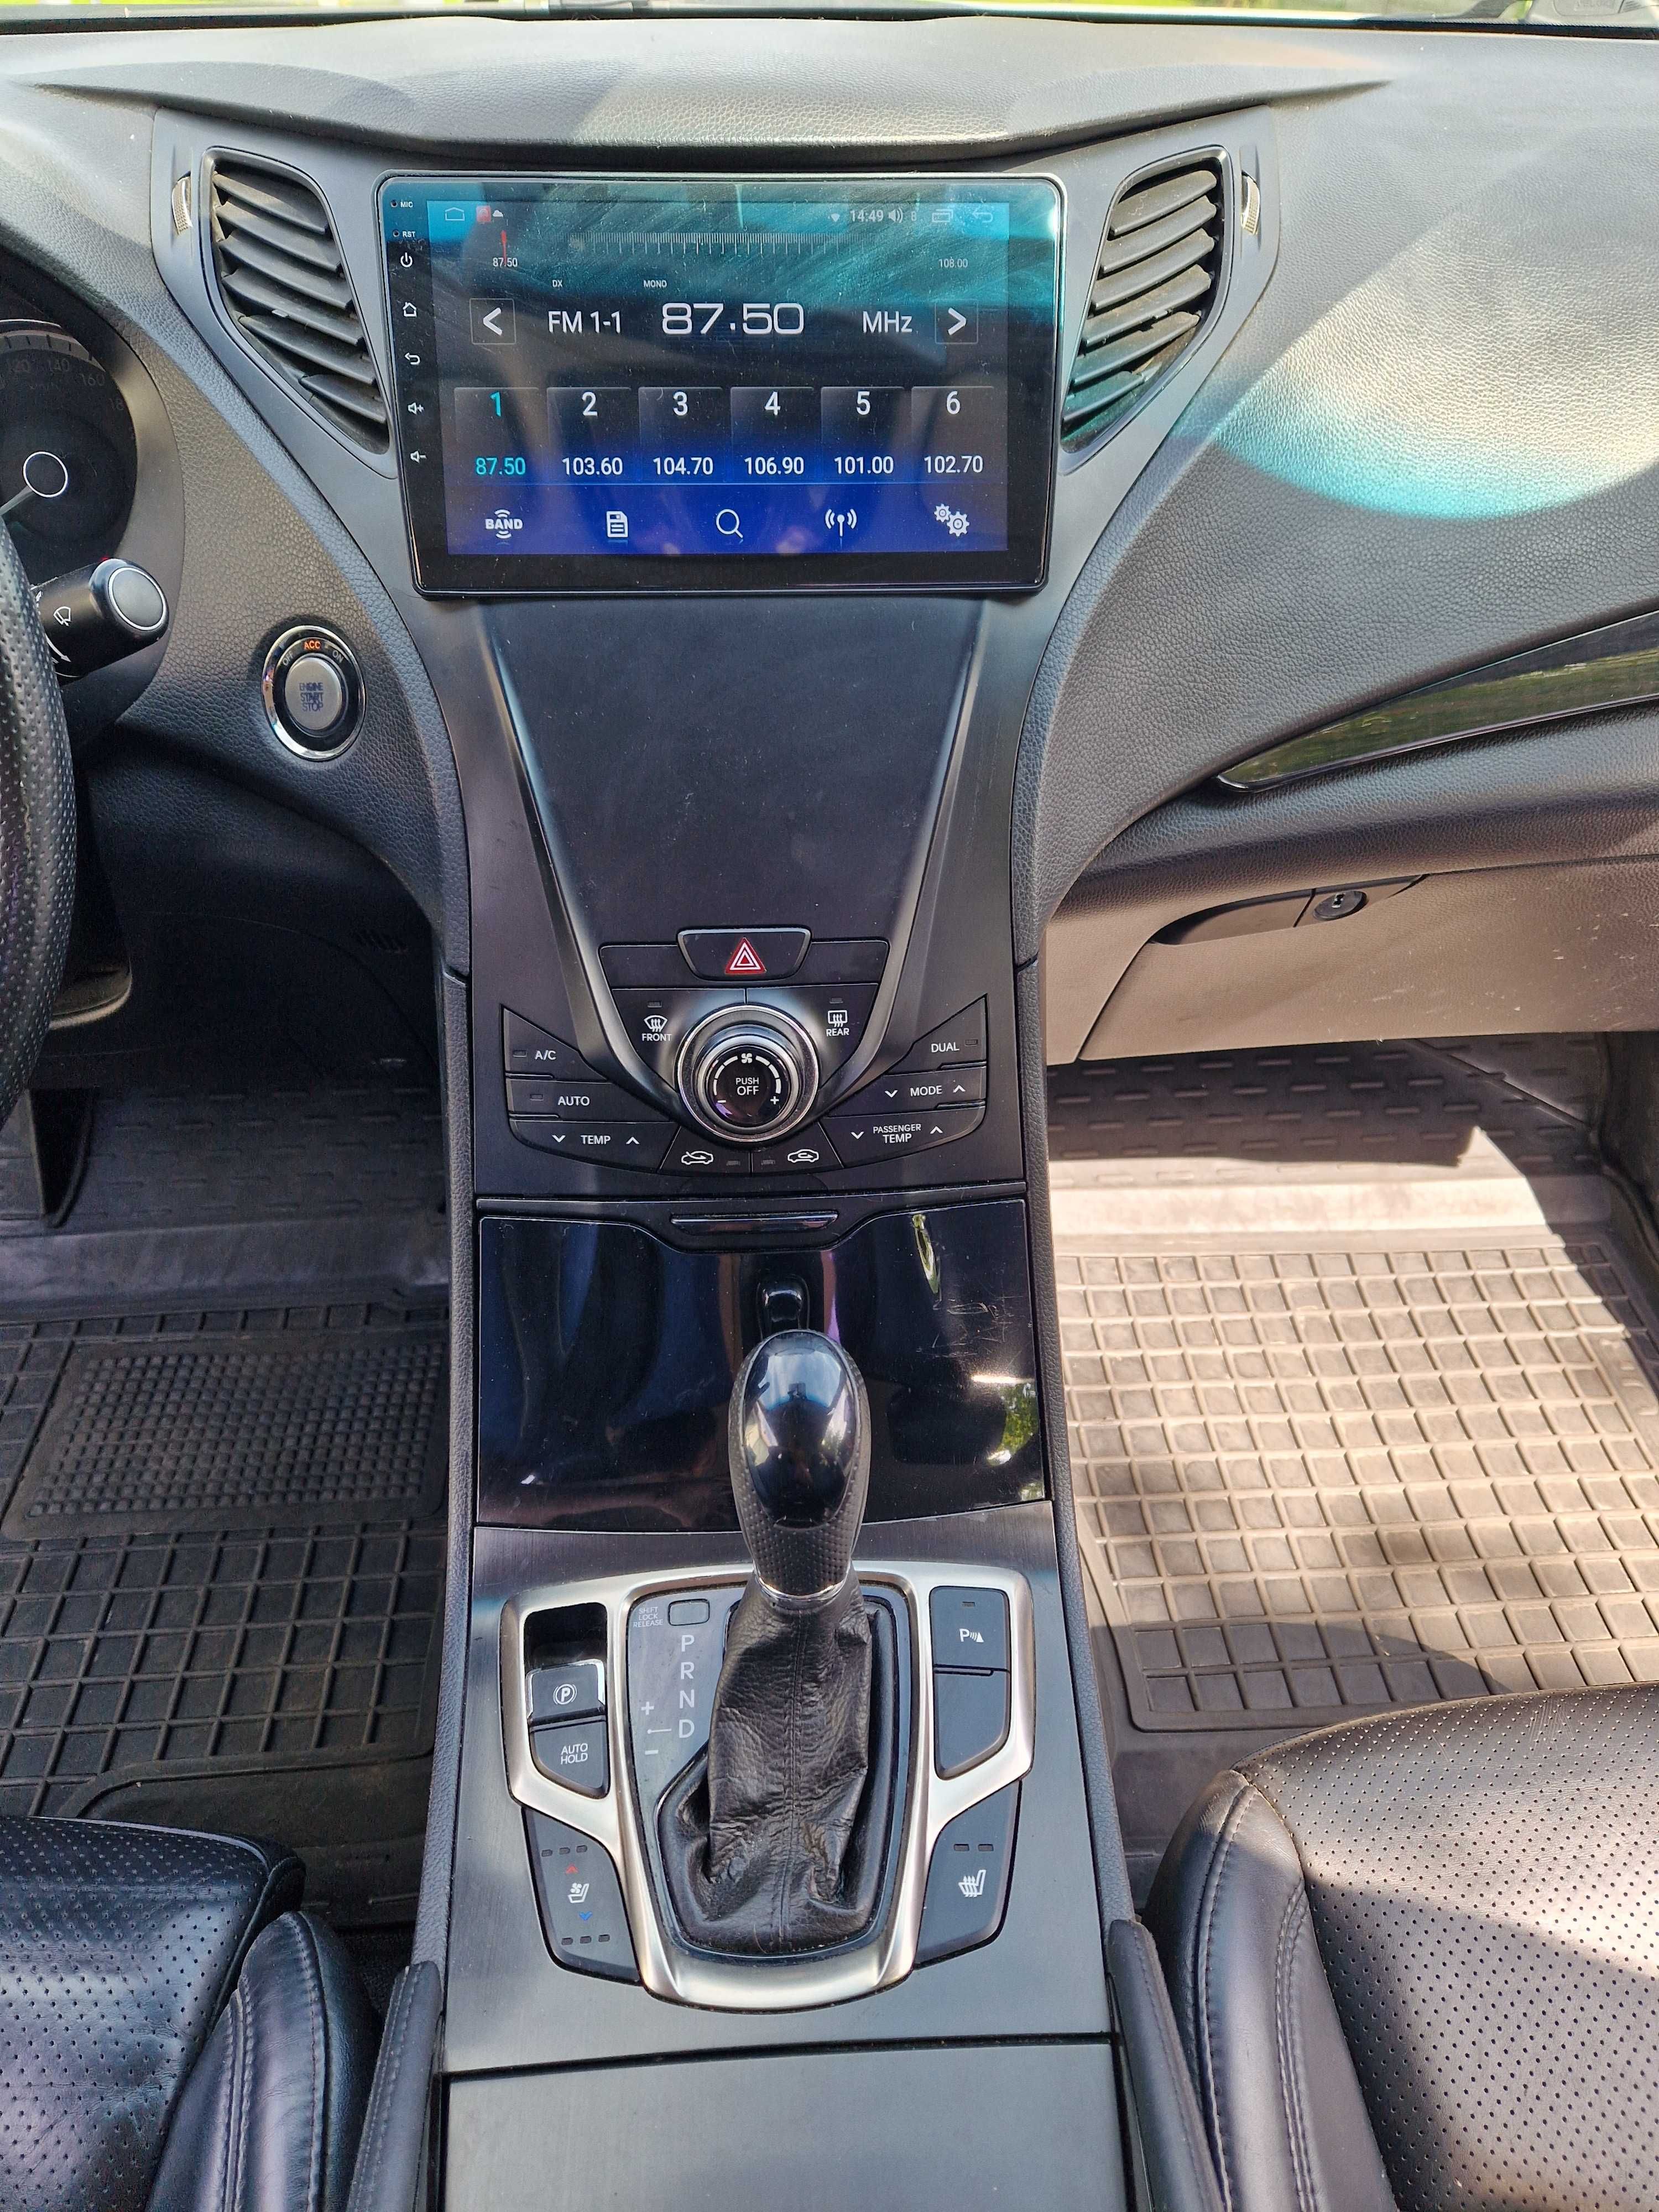 ‼️Hyundai Grandeur авто премиум класса 2013 год 3.0 ГАЗ‼️